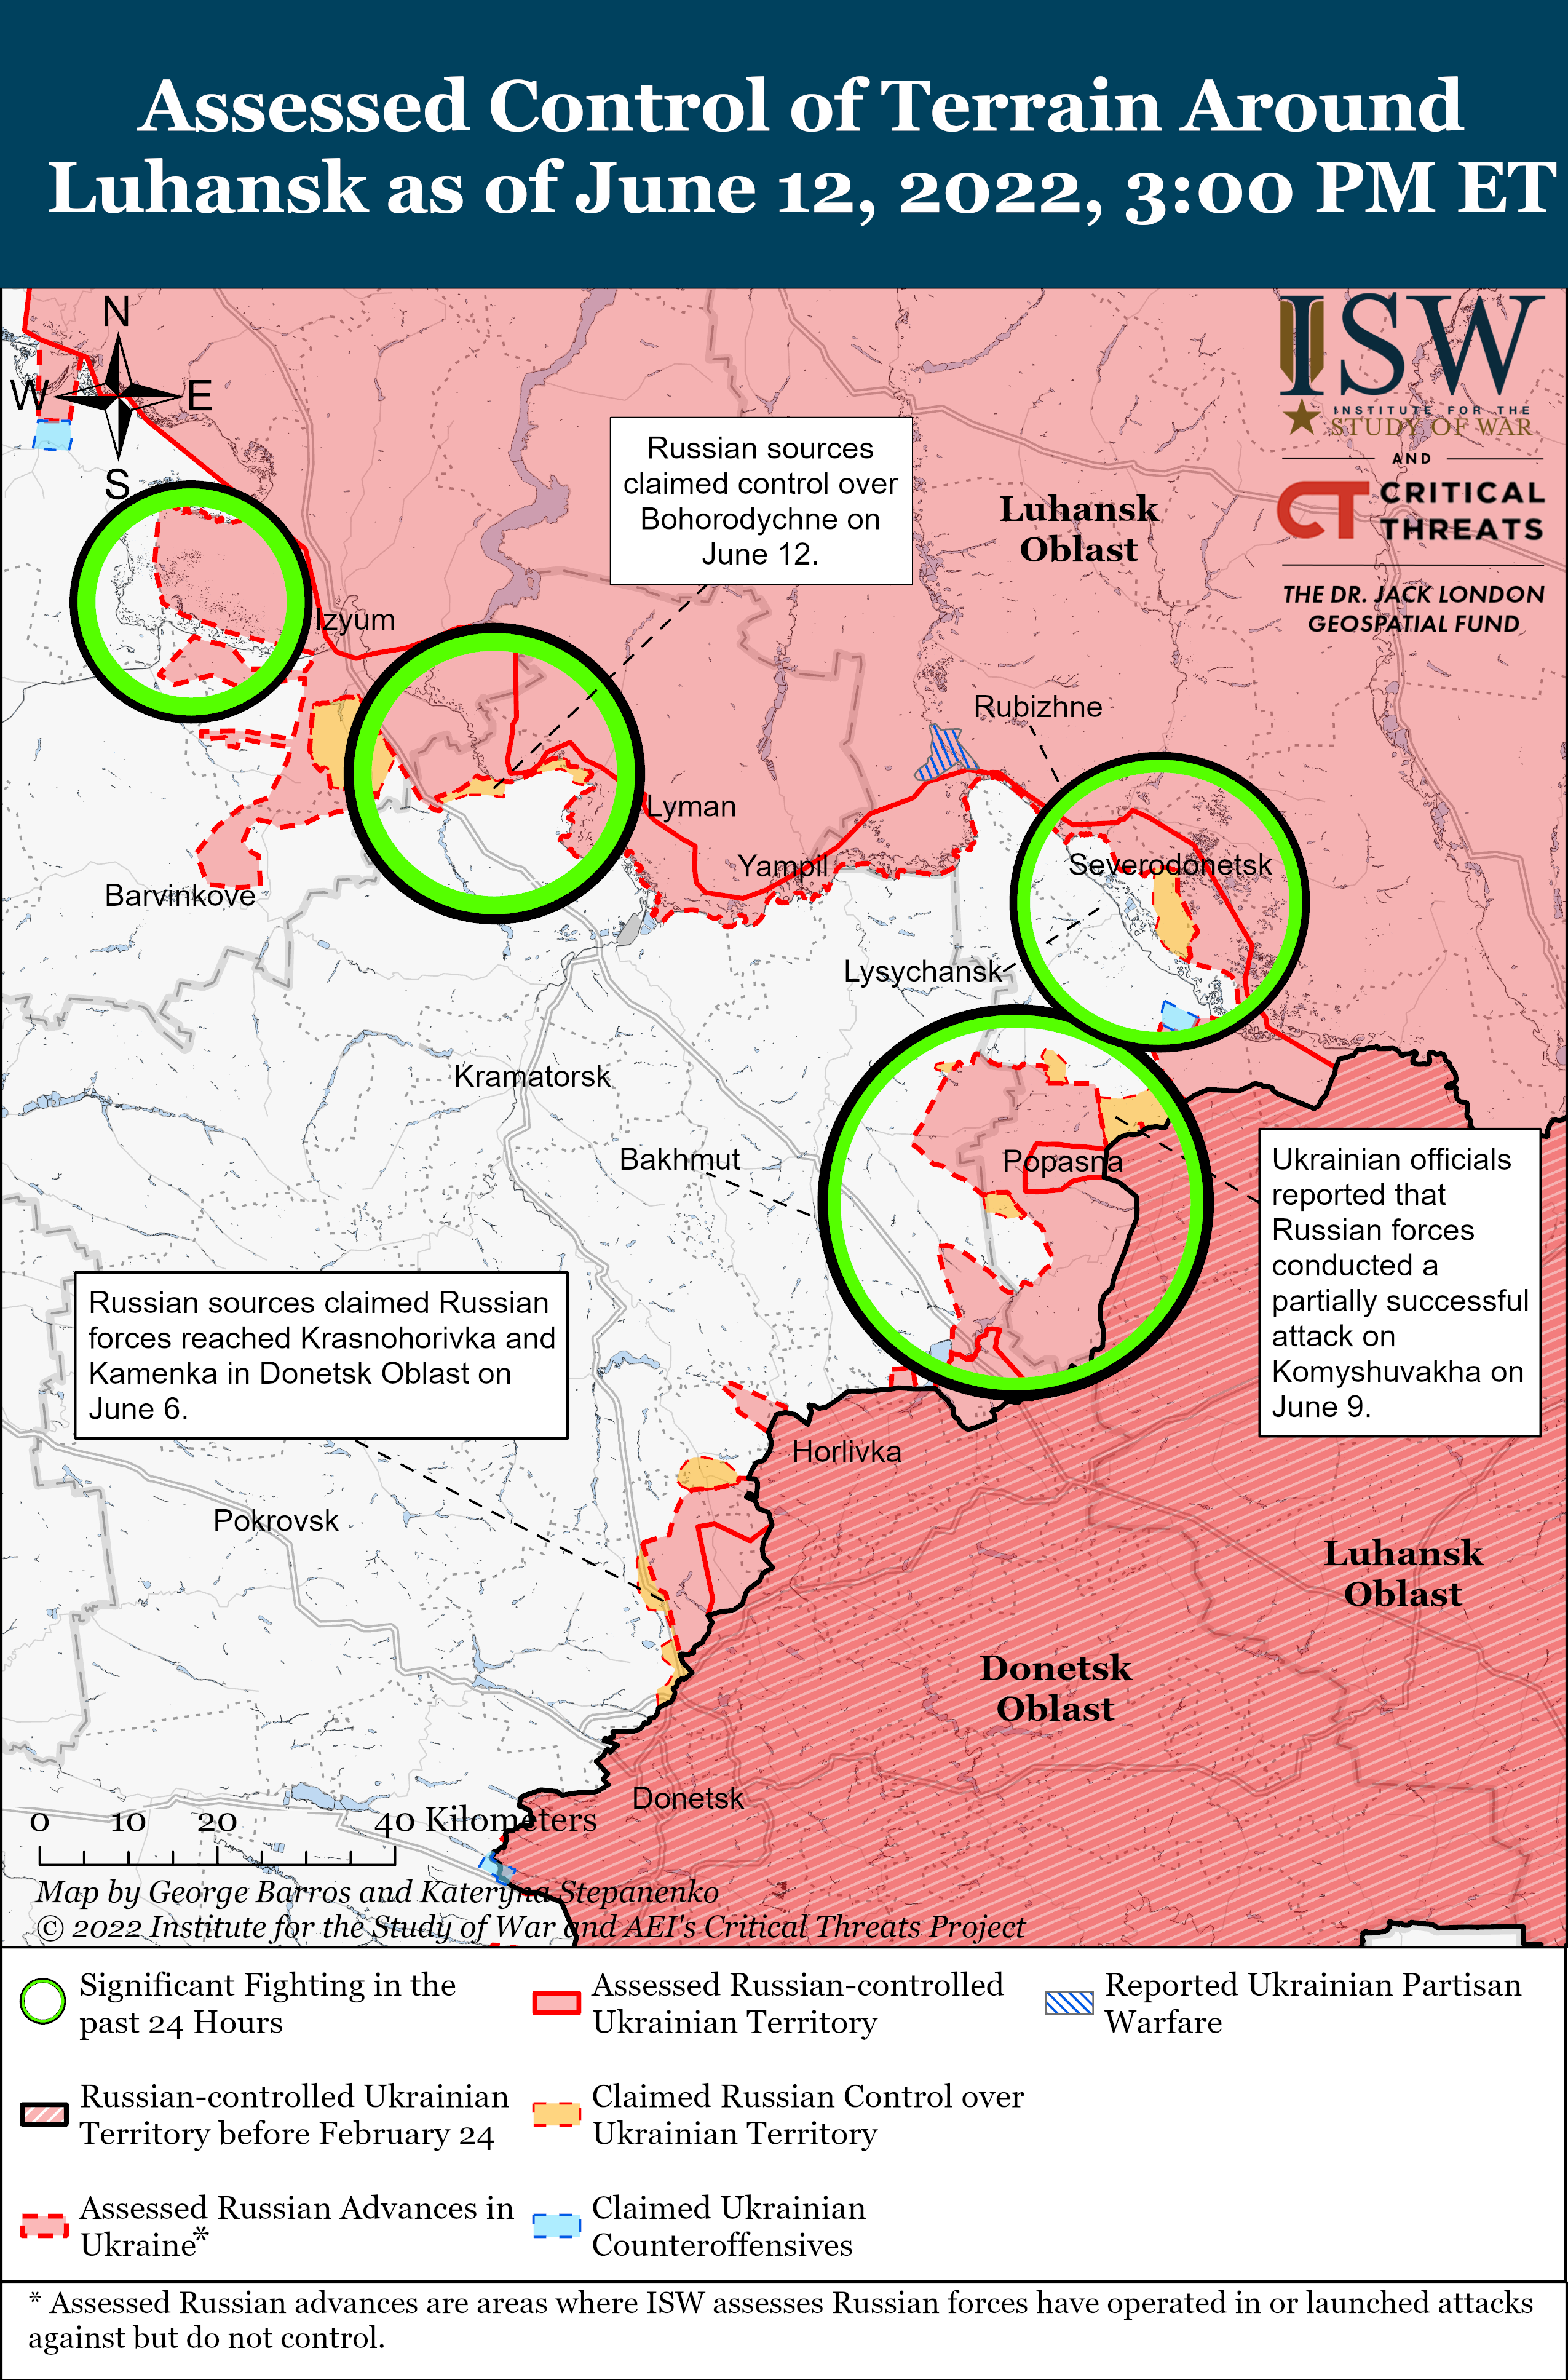 Российские войска достигли прогресса в продвижении к Славянску, Изюм - важная цель, — ISW 1